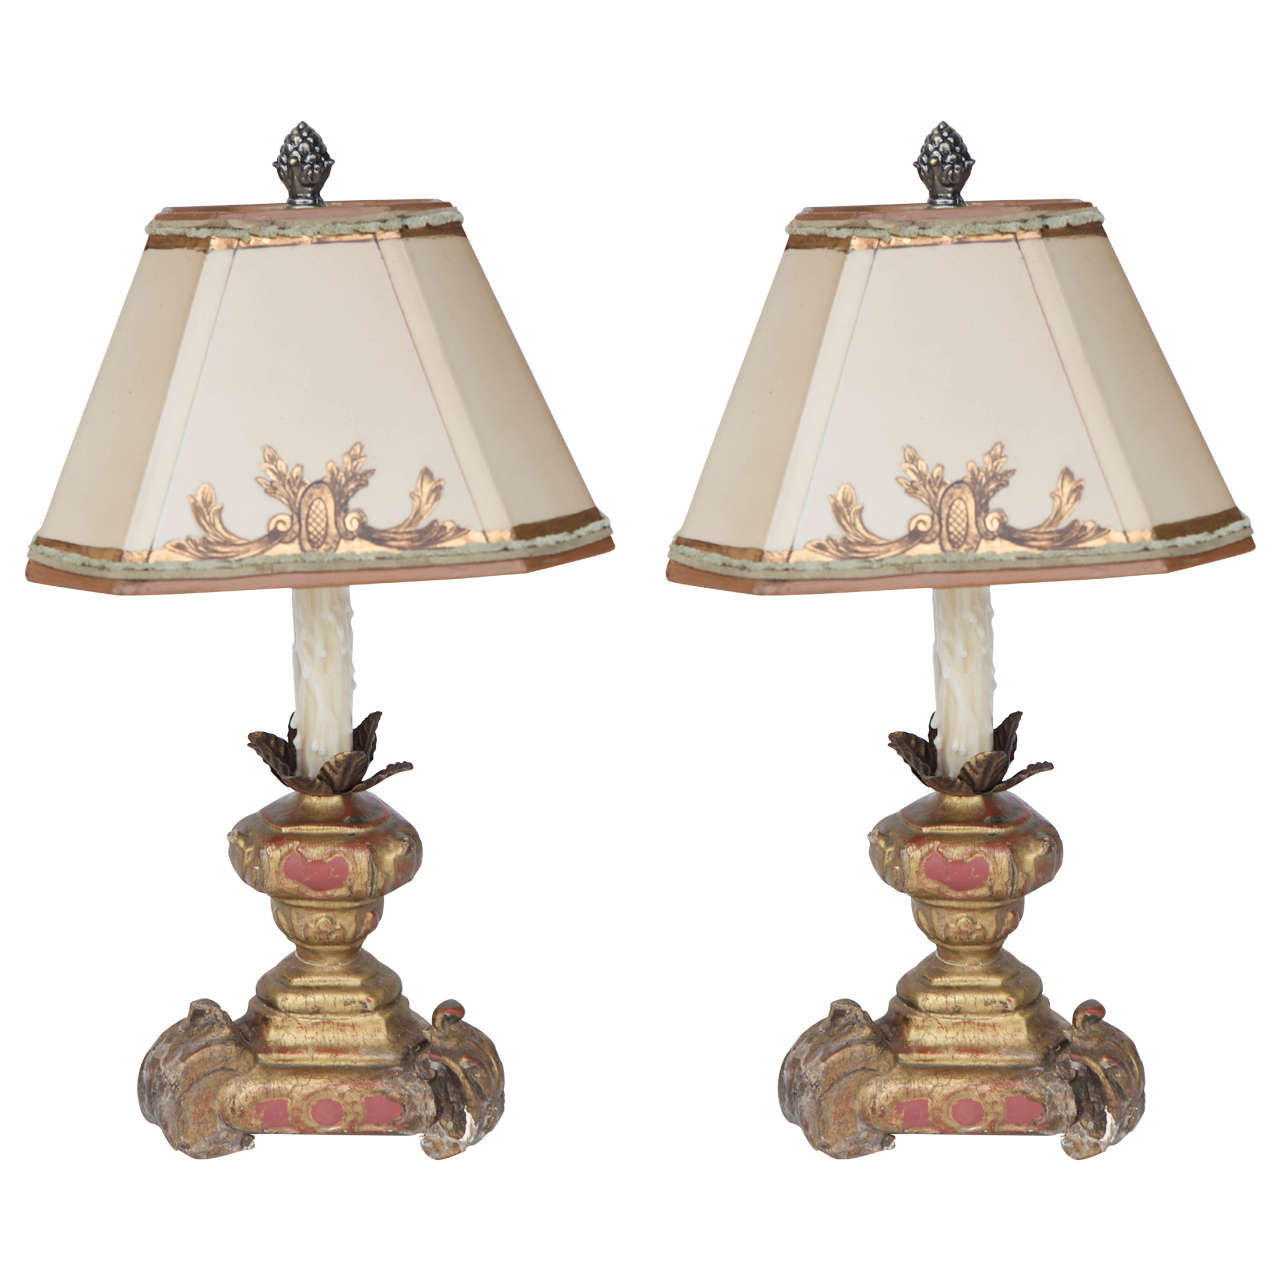 Paire de lampes à bougie italiennes du 19ème siècle en bois doré et peint